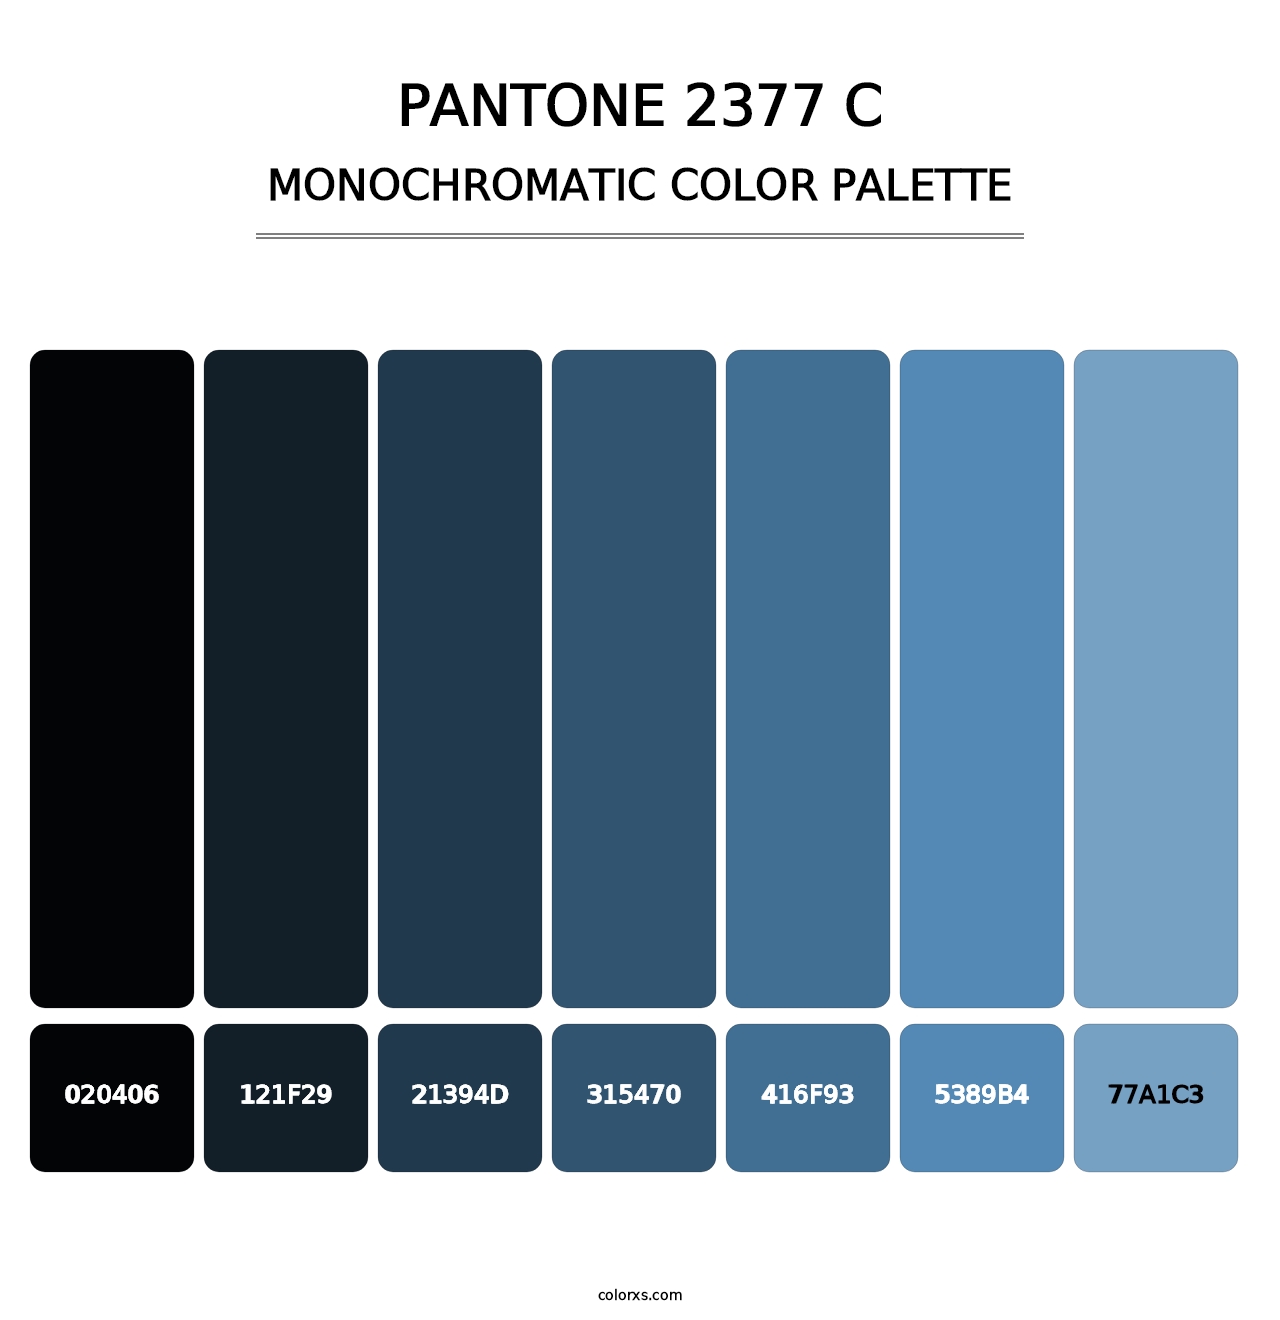 PANTONE 2377 C - Monochromatic Color Palette